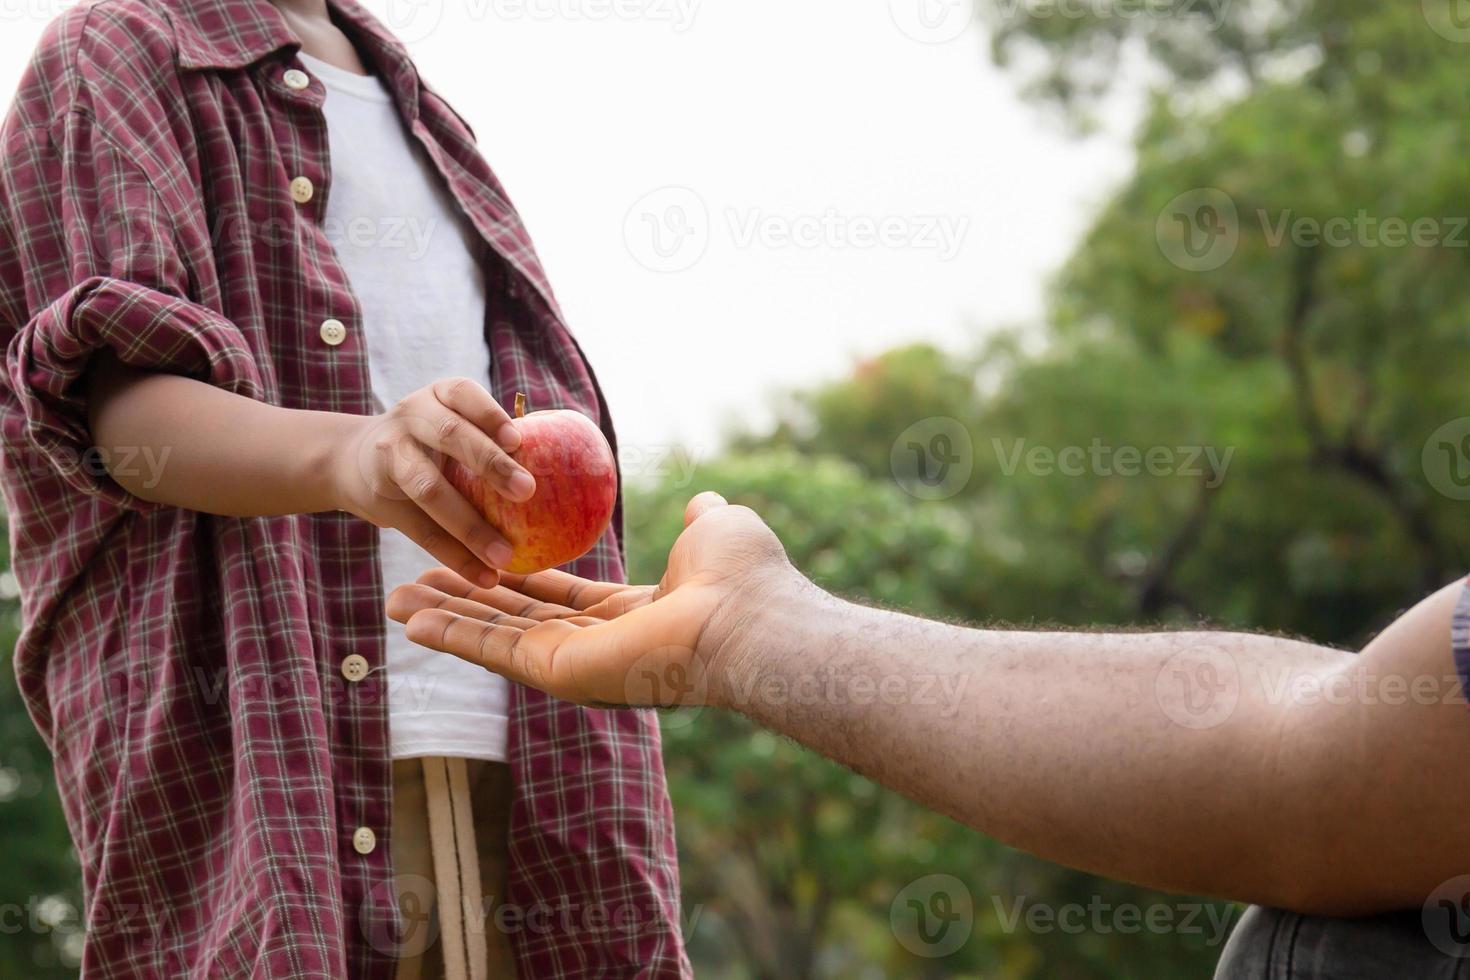 figlio dà una mela rossa a suo padre, un ragazzo afroamericano consegnò una mela a suo padre foto